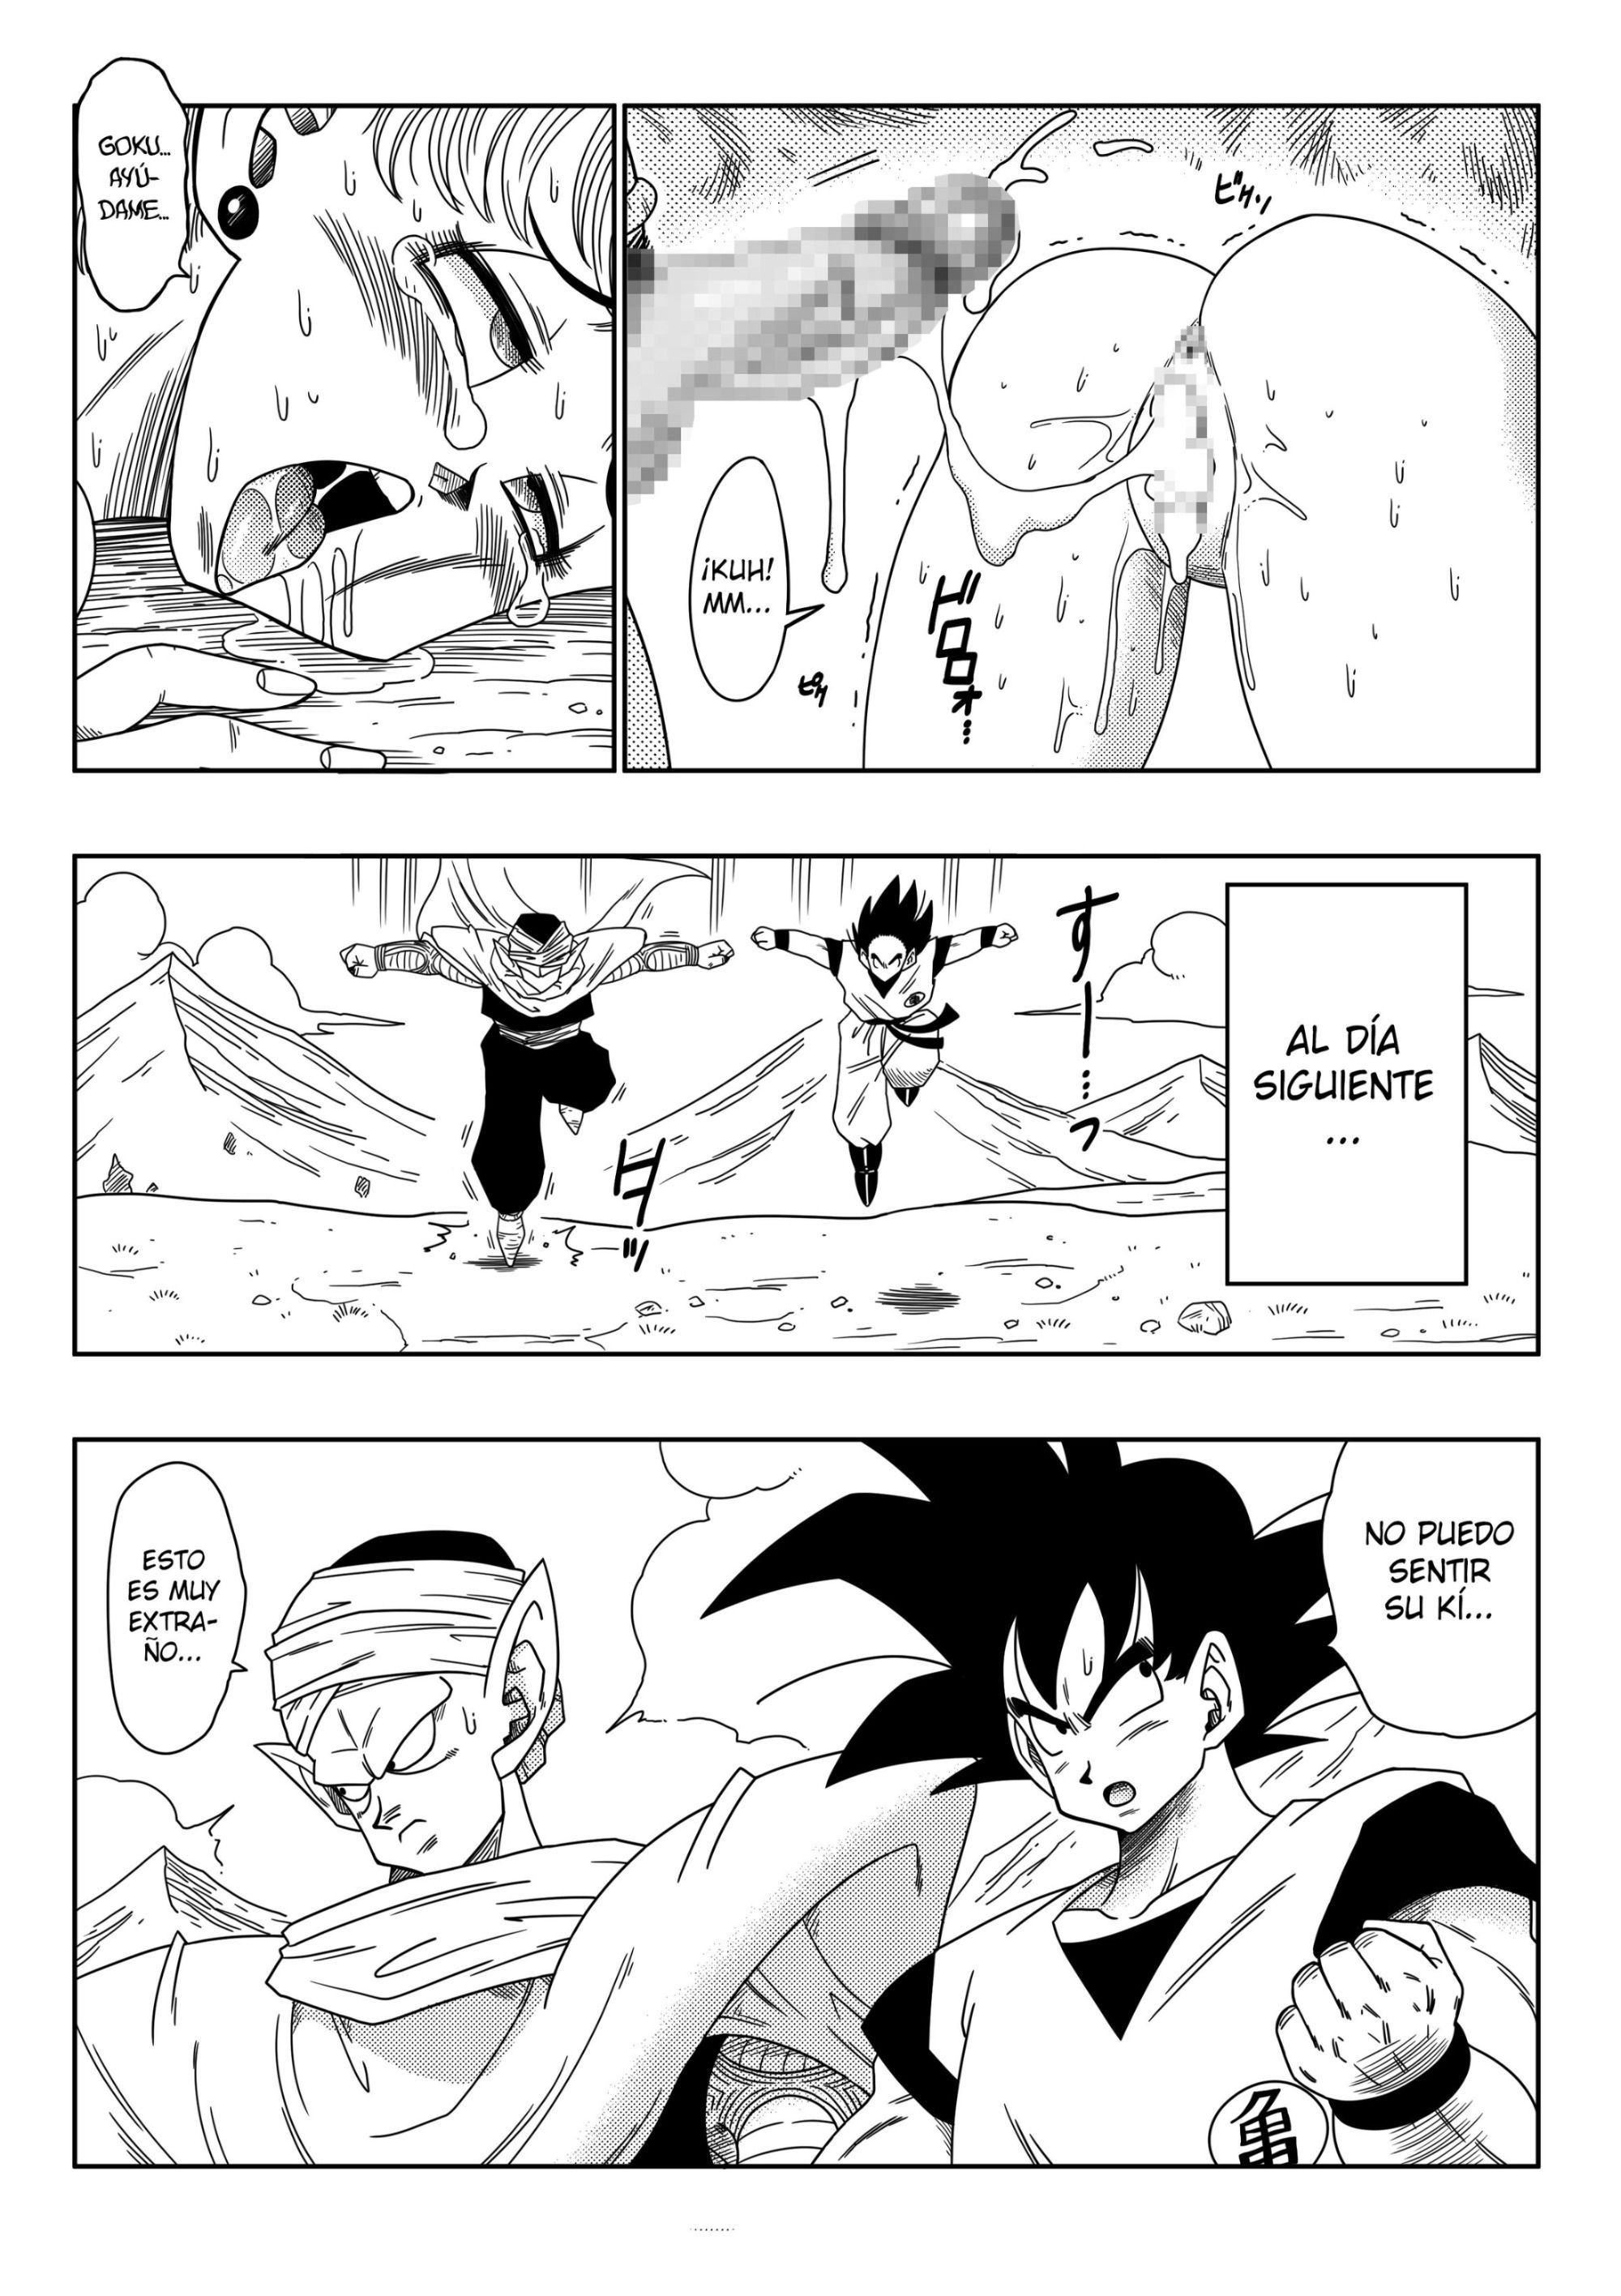 El hermano de Goku - 20